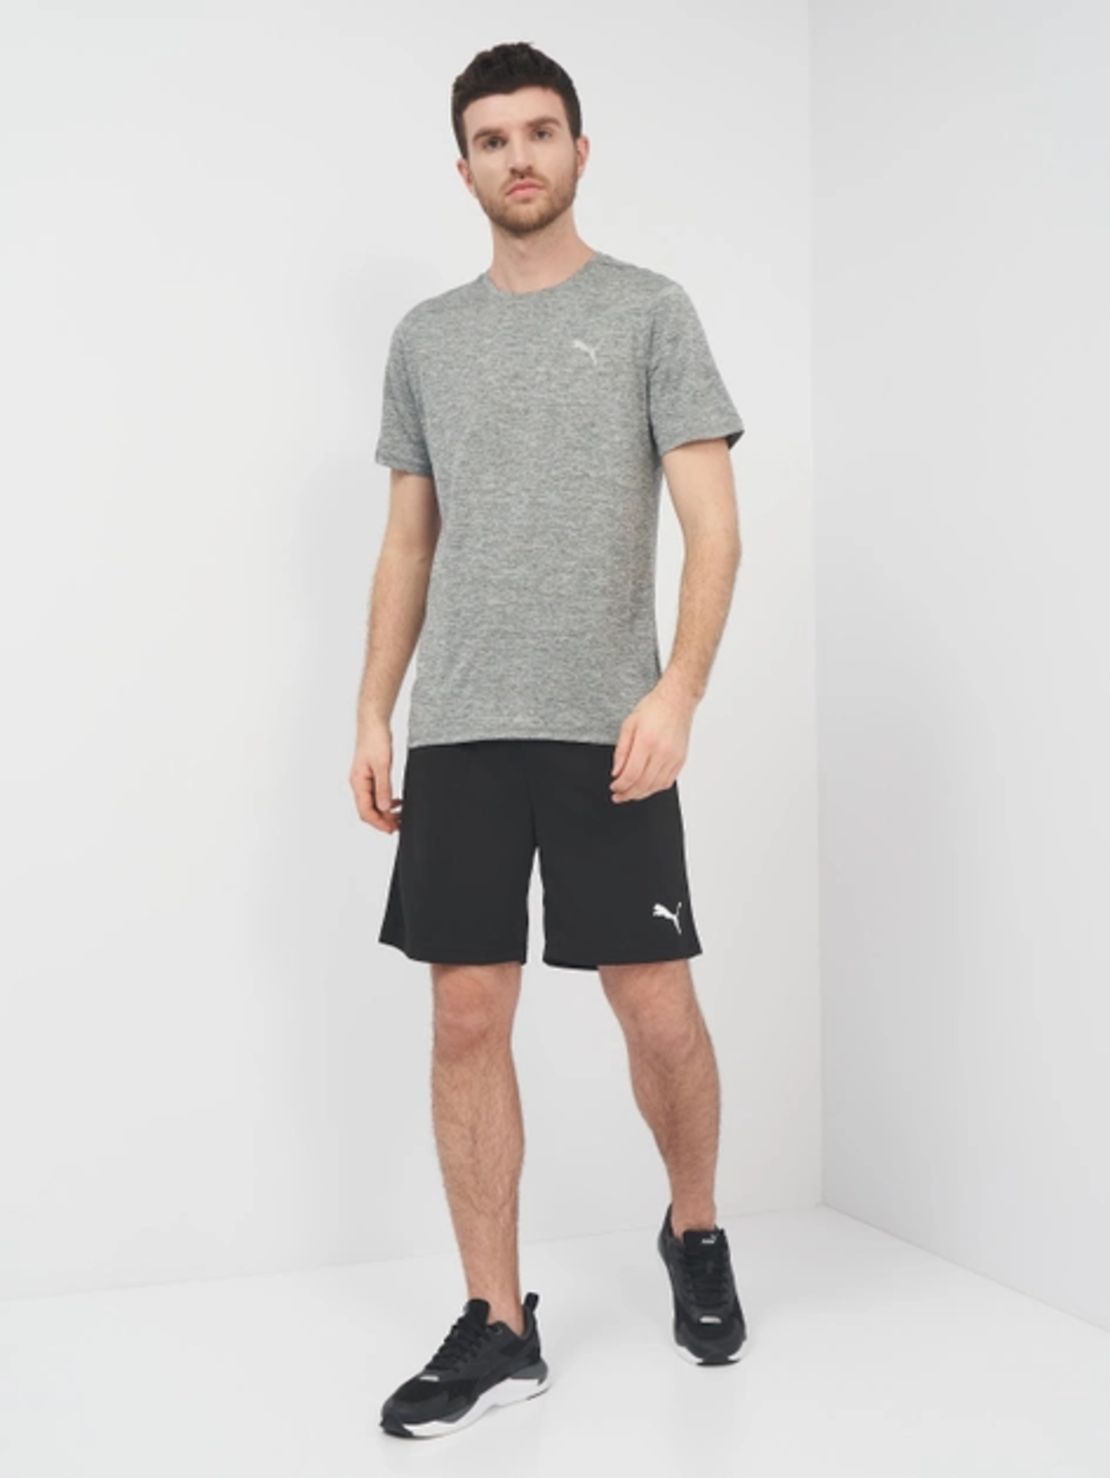 PUMA Individualrise Shorts